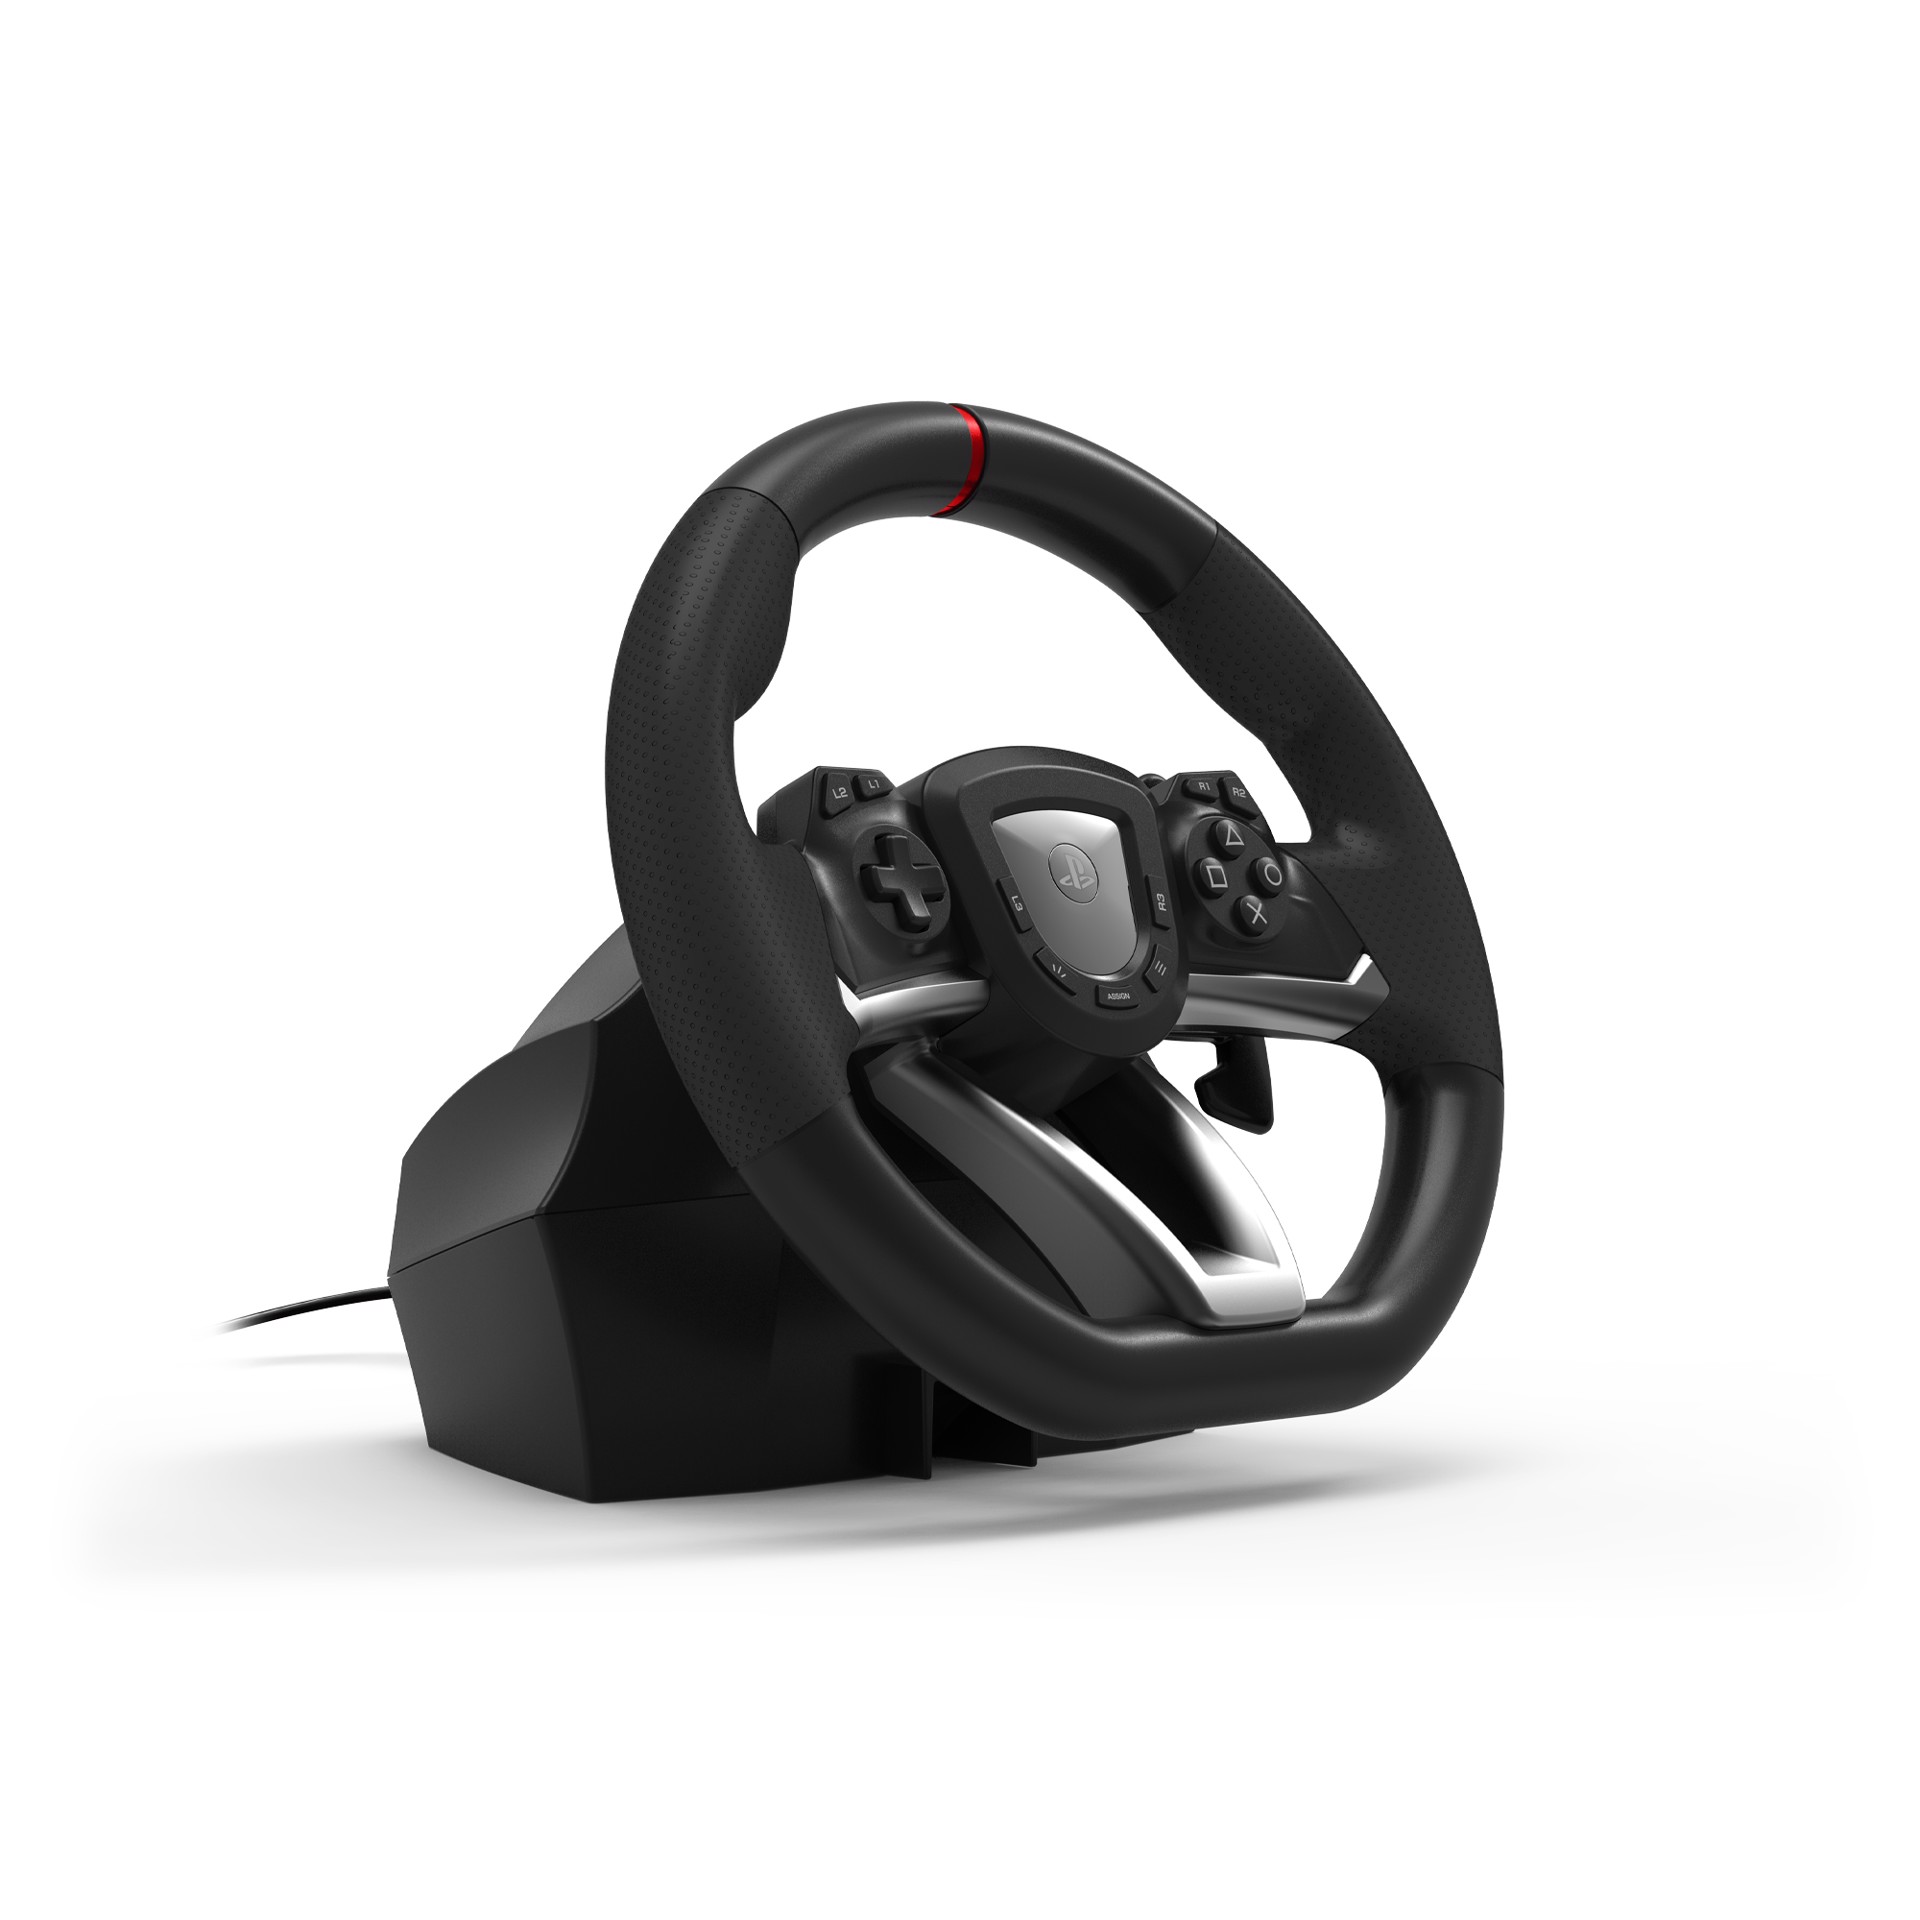 HORI Racing Wheel APEX Nero Sterzo + Pedali PC, PlayStation 4, PlayStation 5, Accessori Playstation 4 in Offerta su Stay On